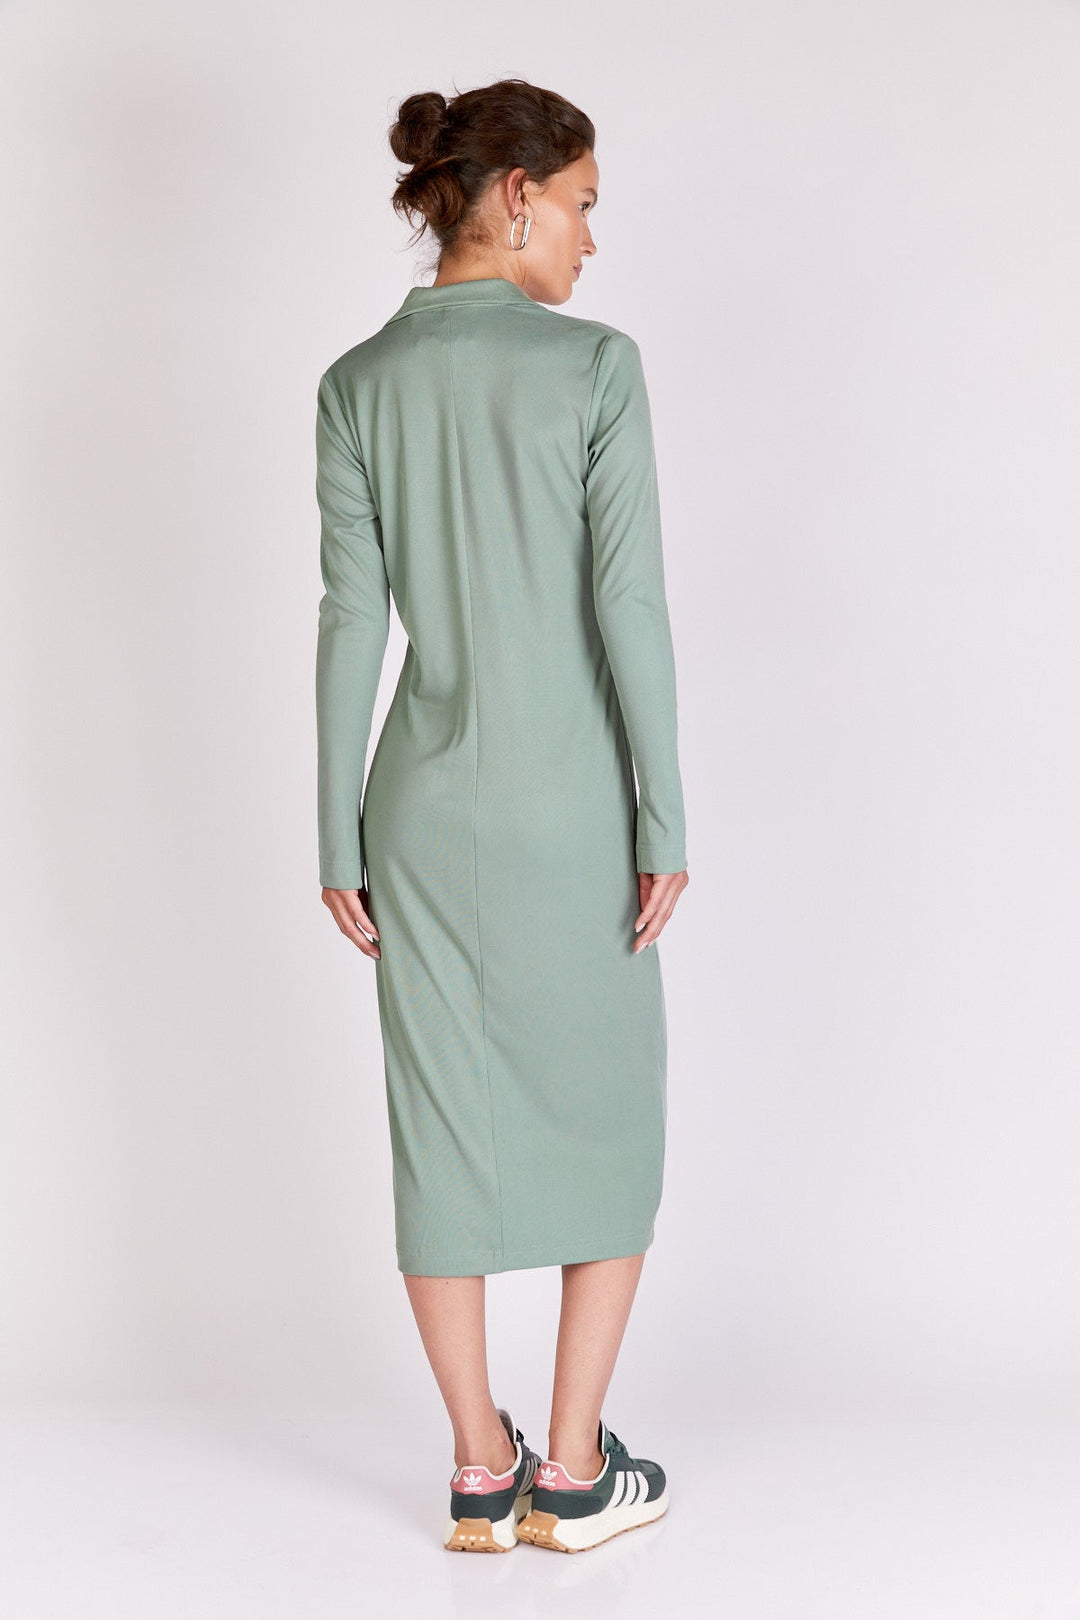 שמלת ויילויט בצבע ירוק - Moi Collection